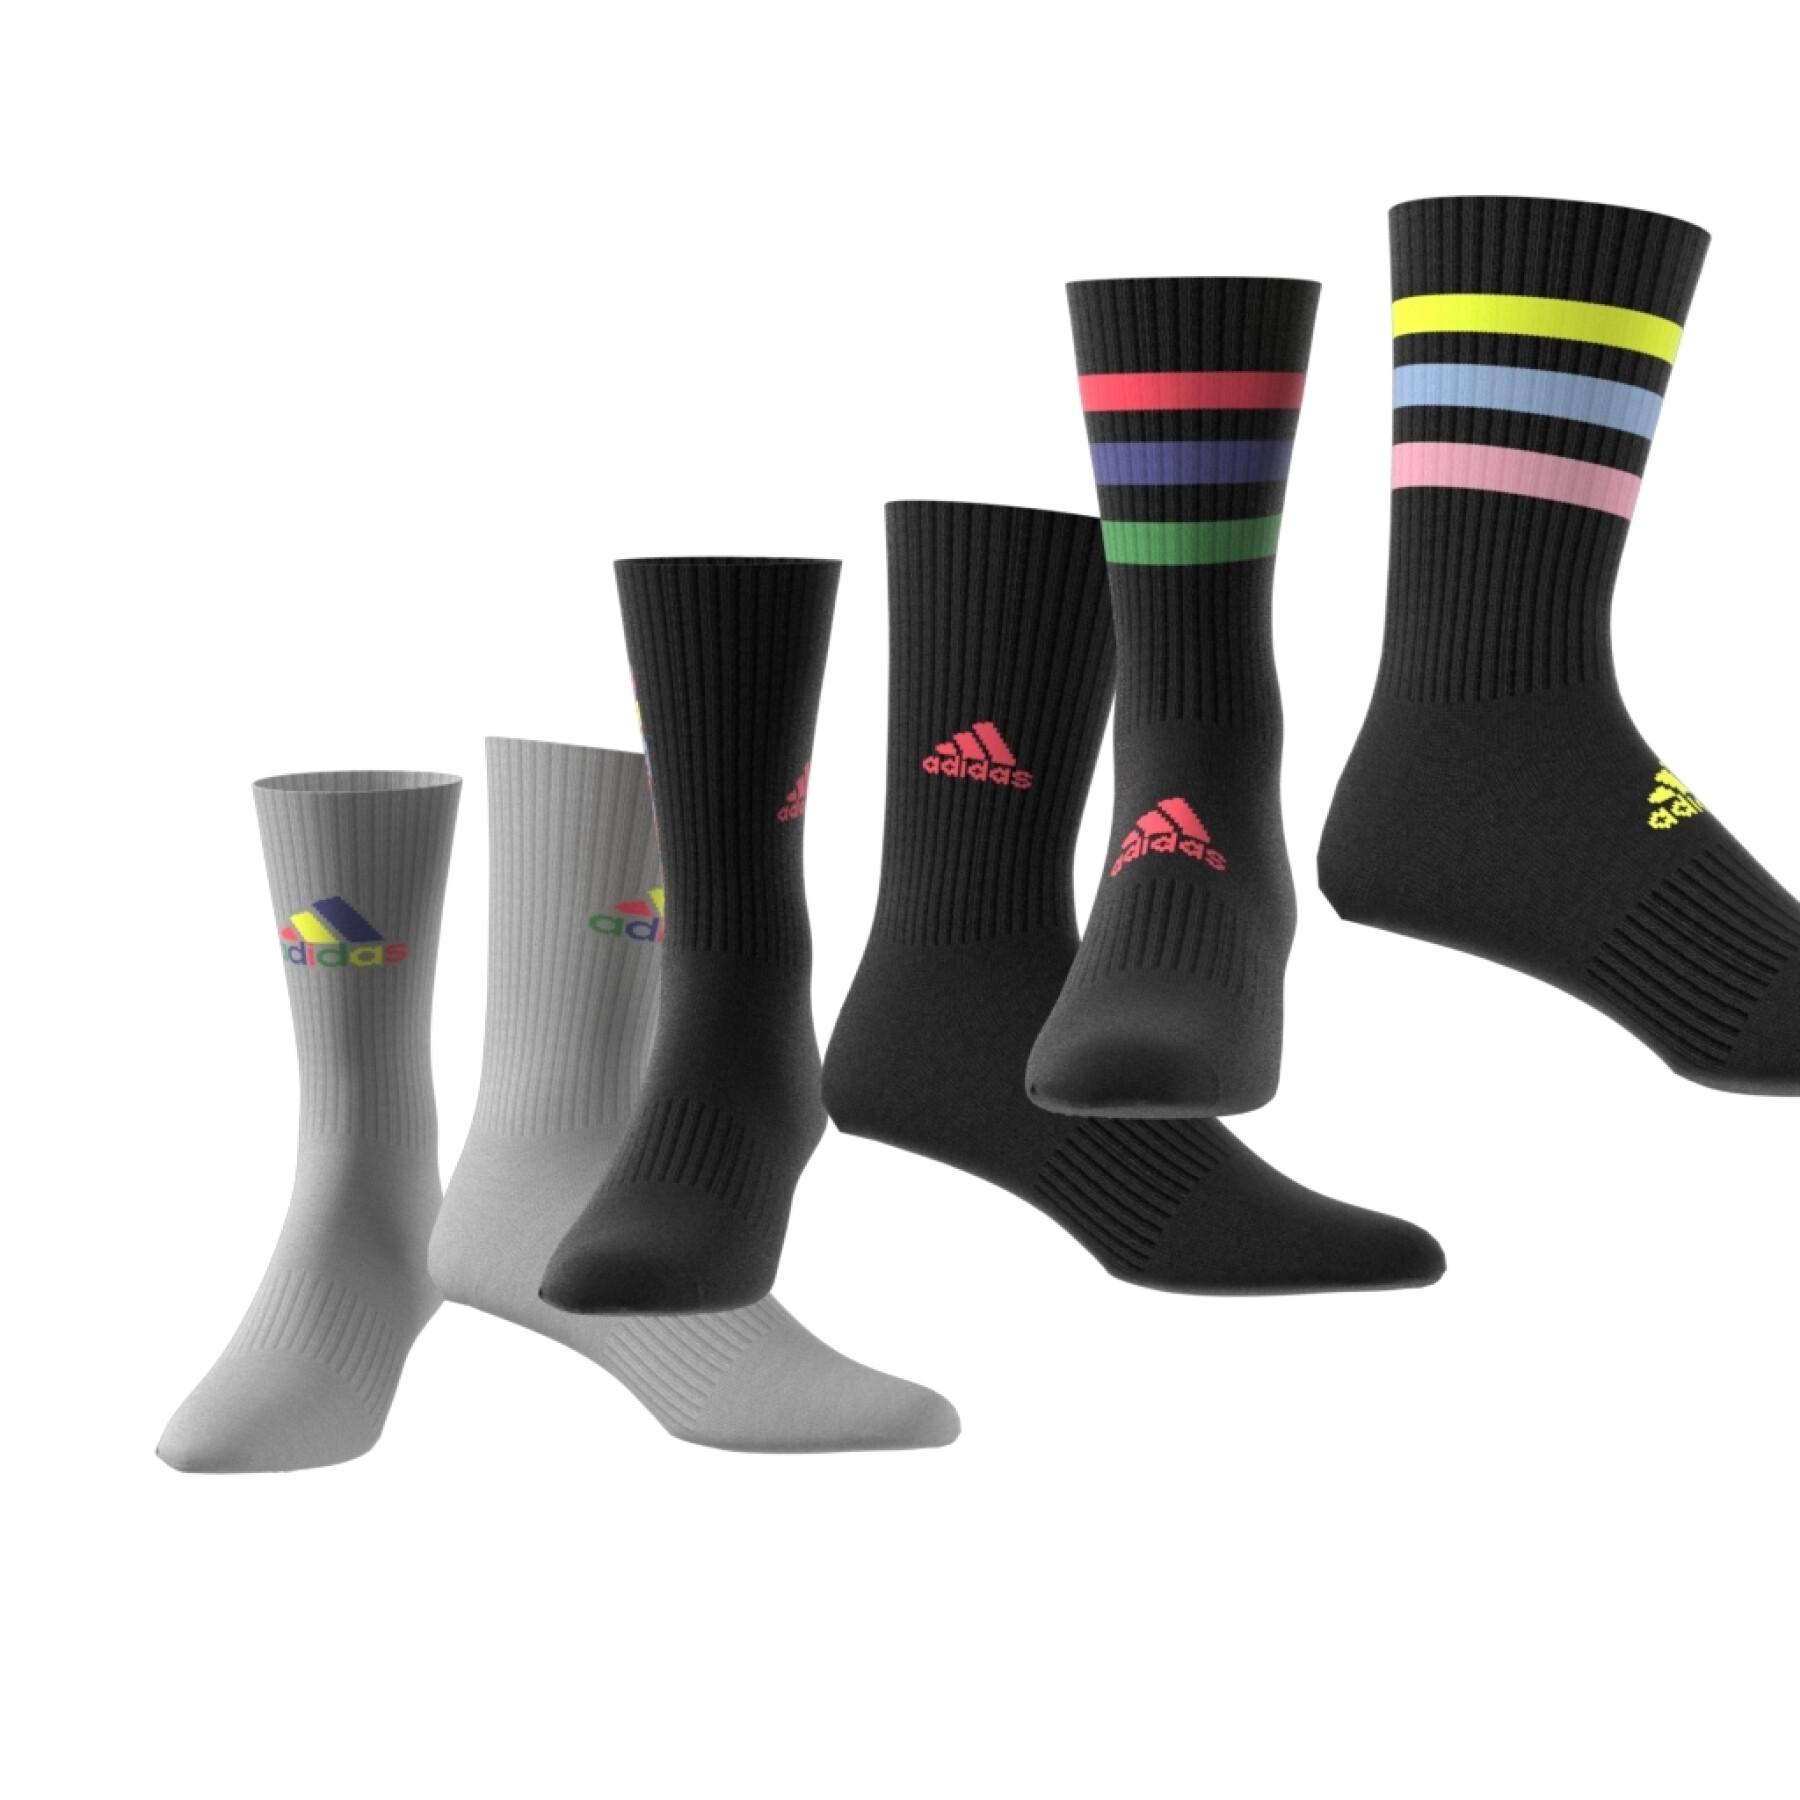 Pack of 3 pairs of mid-calf socks adidas Love Unites